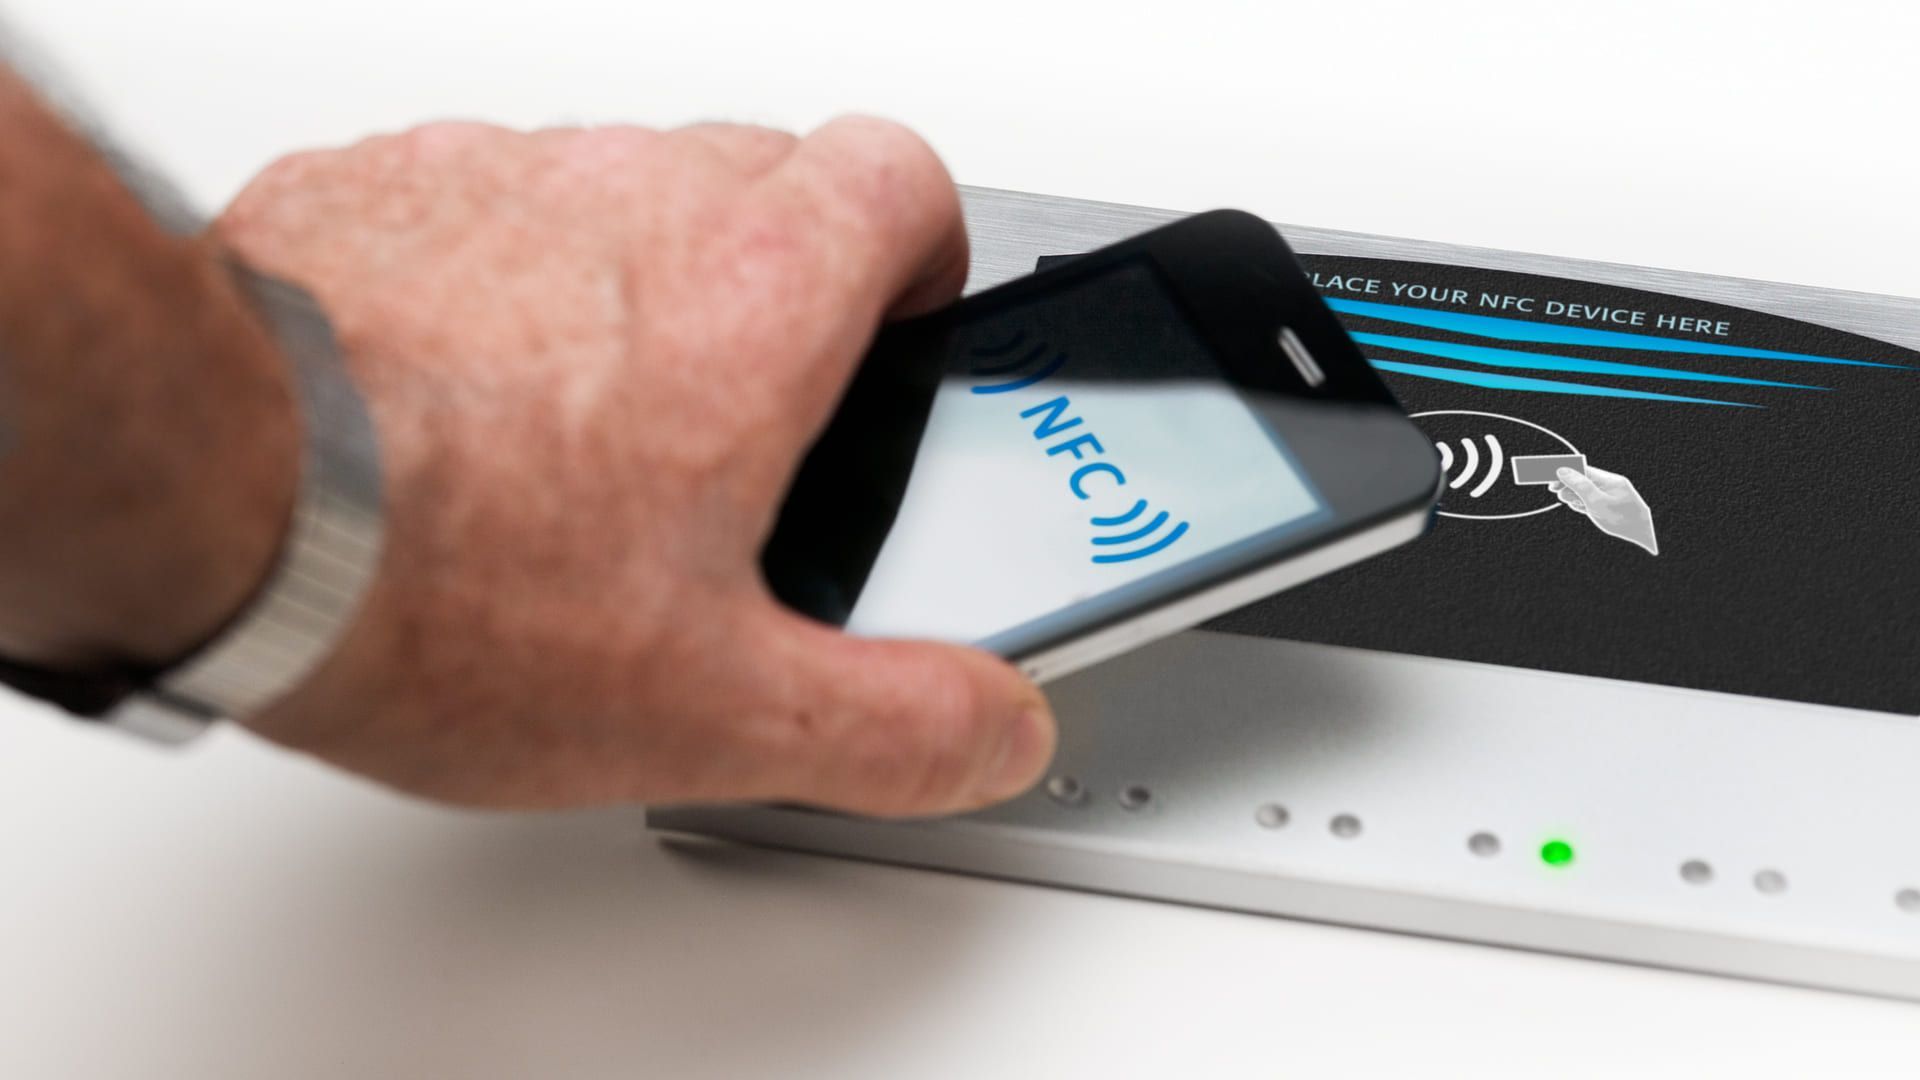 Homem aproxima NFC celular de dispositivo com a mesma tecnologia